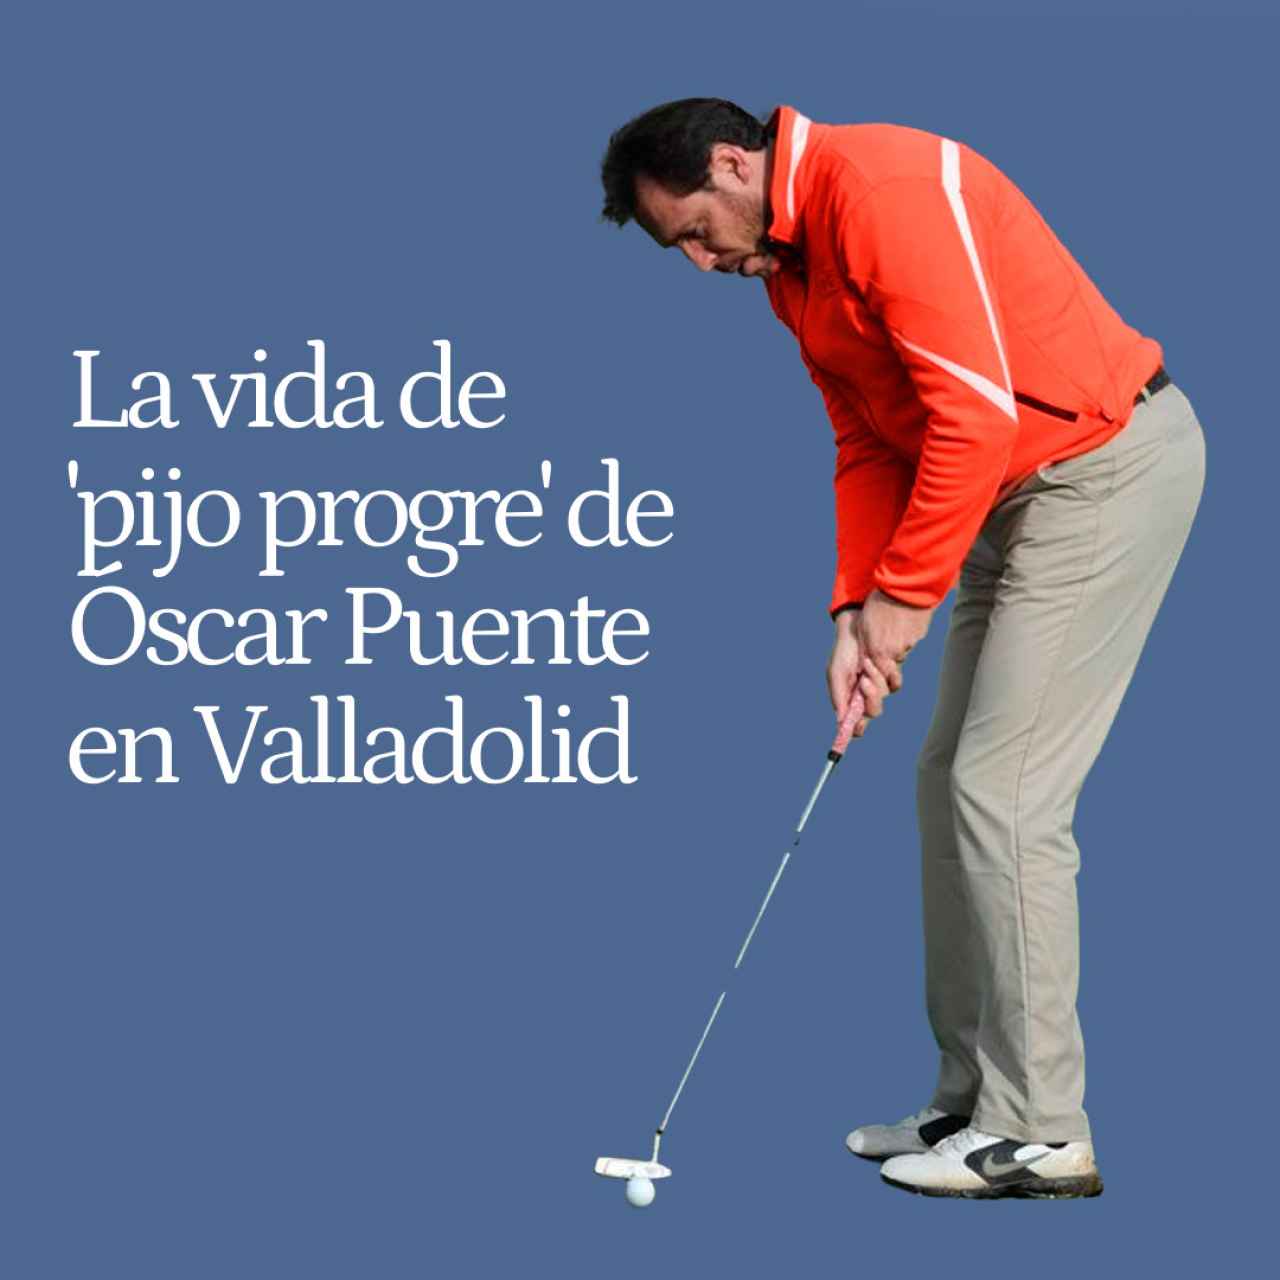 Actor en París, cofrade en Pascua y golfista ocasional: la vida de "pijo progre" de Óscar Puente en Valladolid